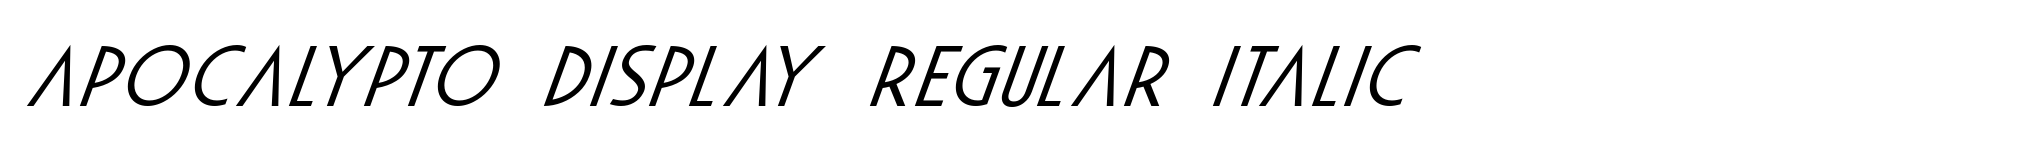 Apocalypto Display Regular Italic image